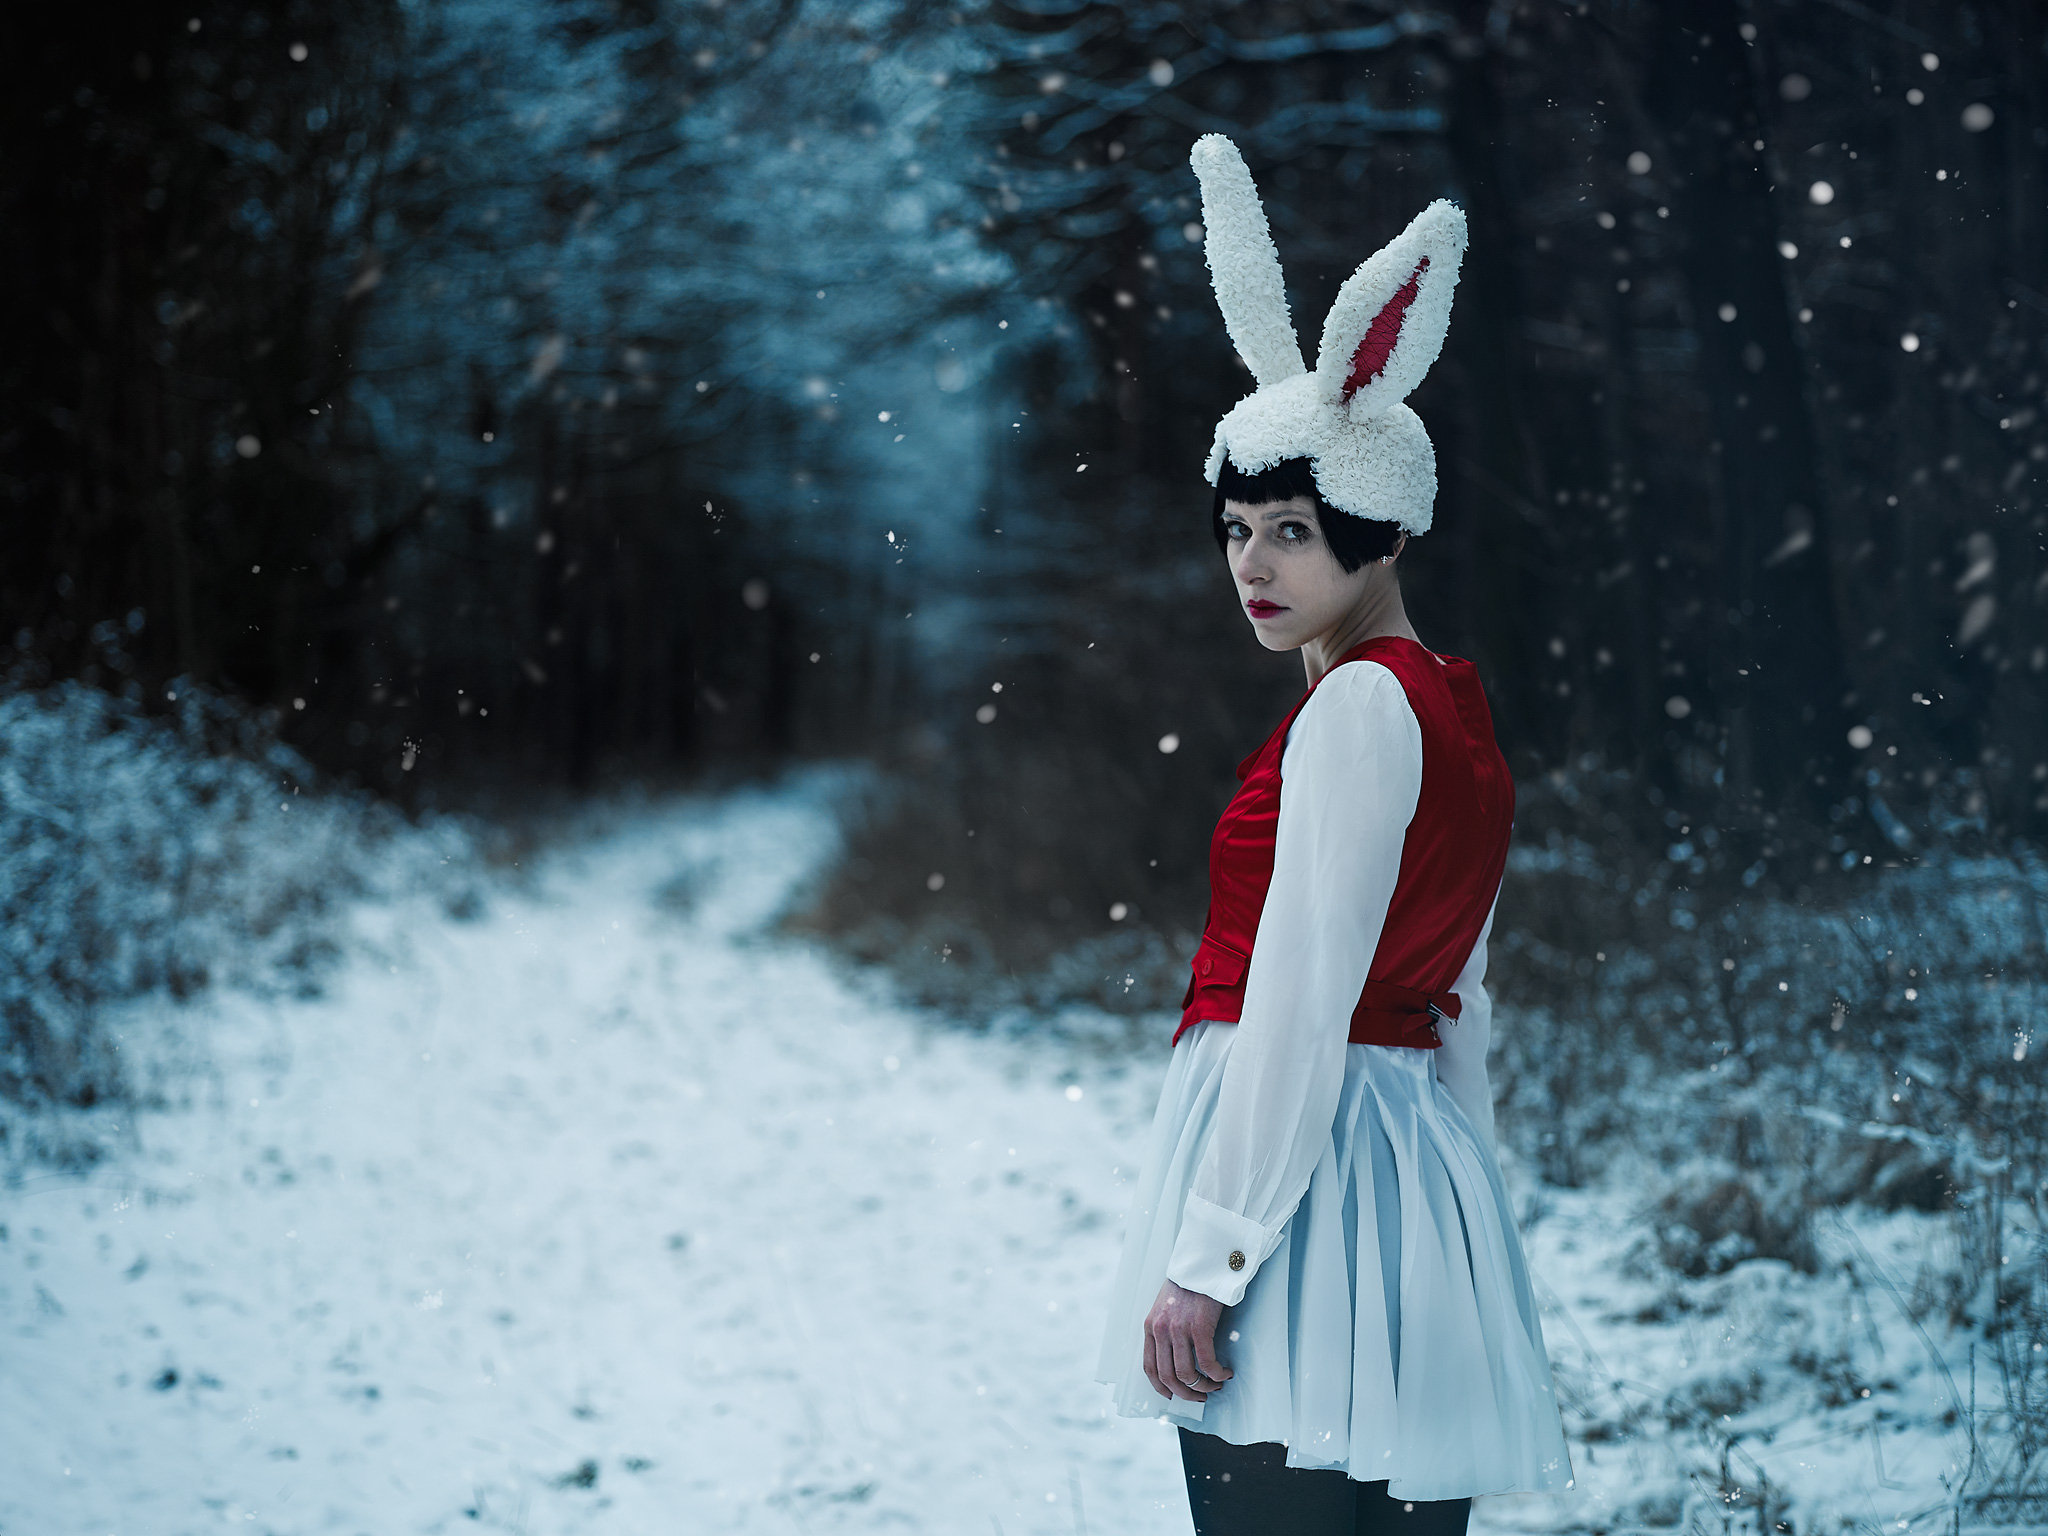 Follow the white Rabbit...